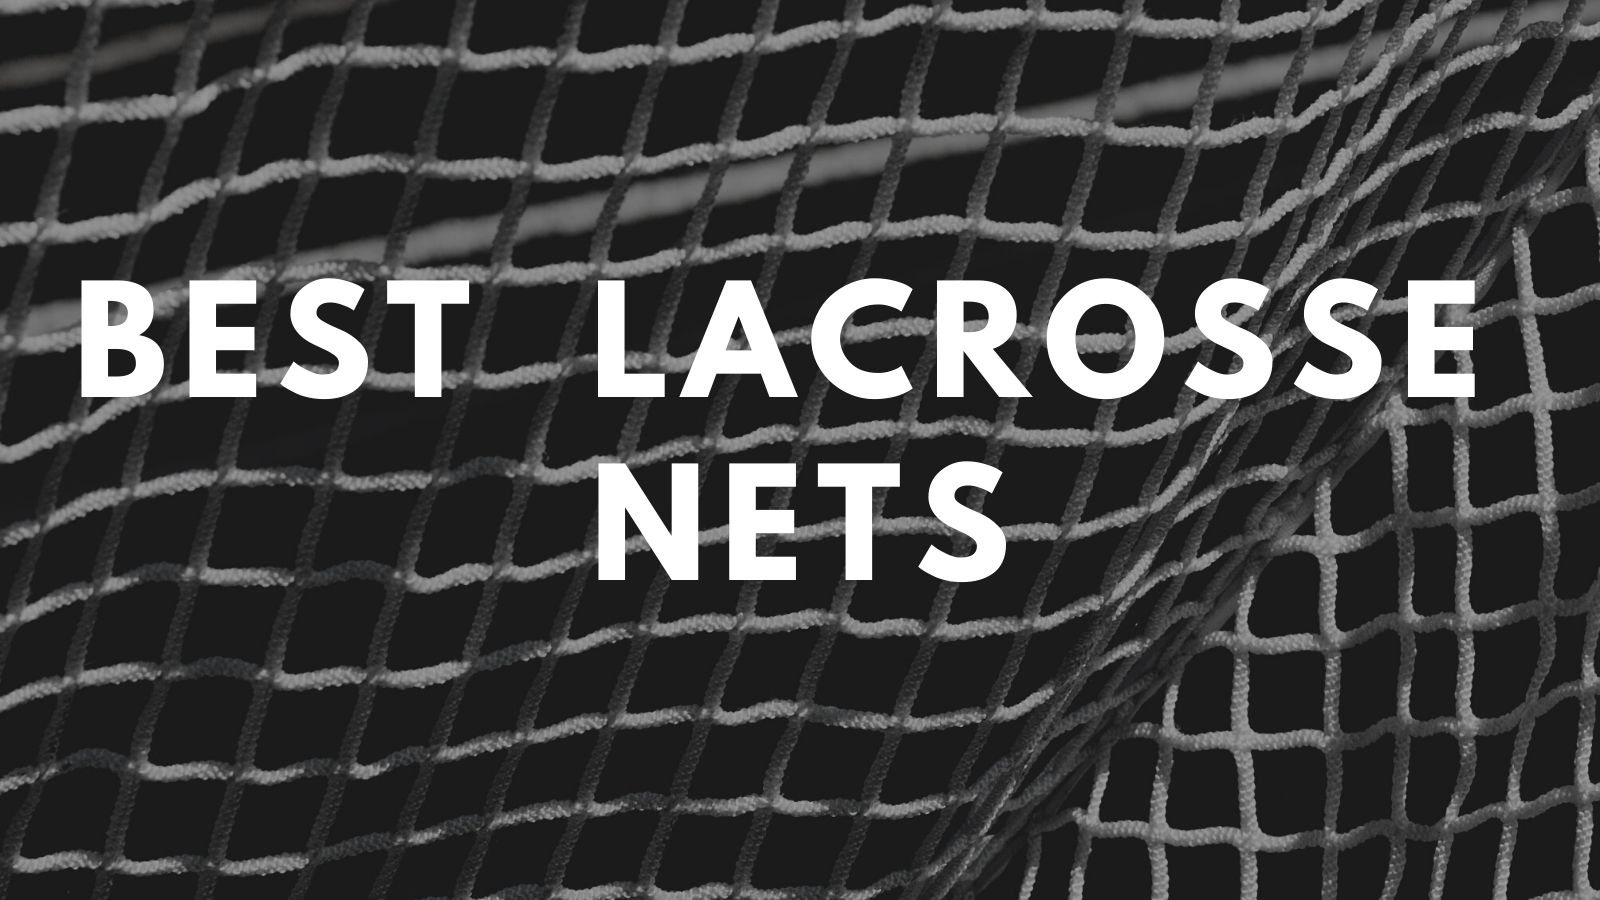 best lacrosse nets for lacrosse goals